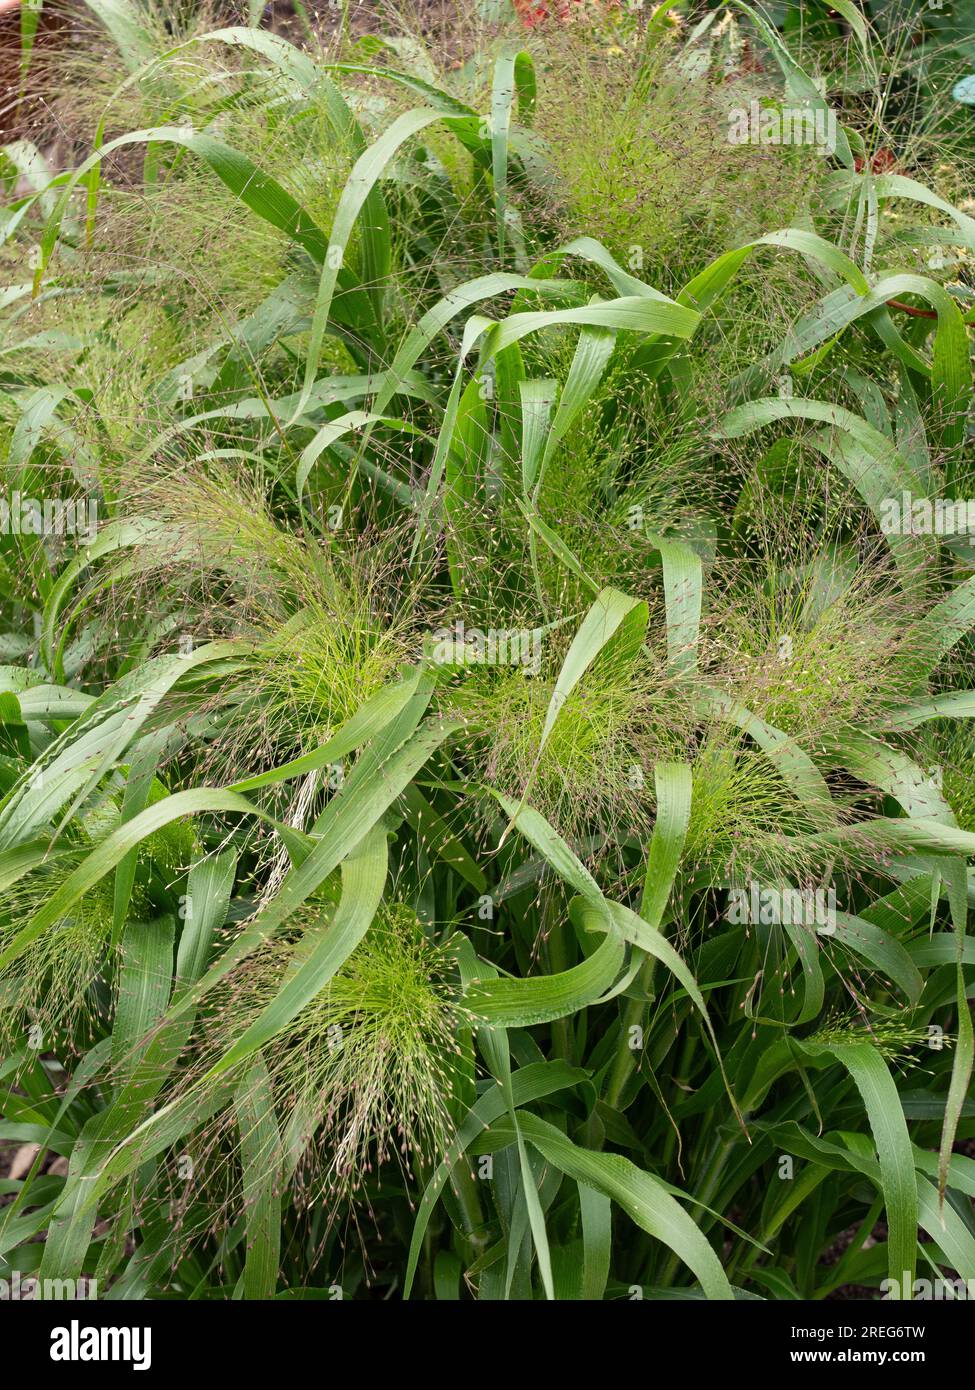 Die luftigen, zarten Blumenköpfe und üppigen grünen Blätter des Grases Panicum elegans „Spinkles“ Stockfoto